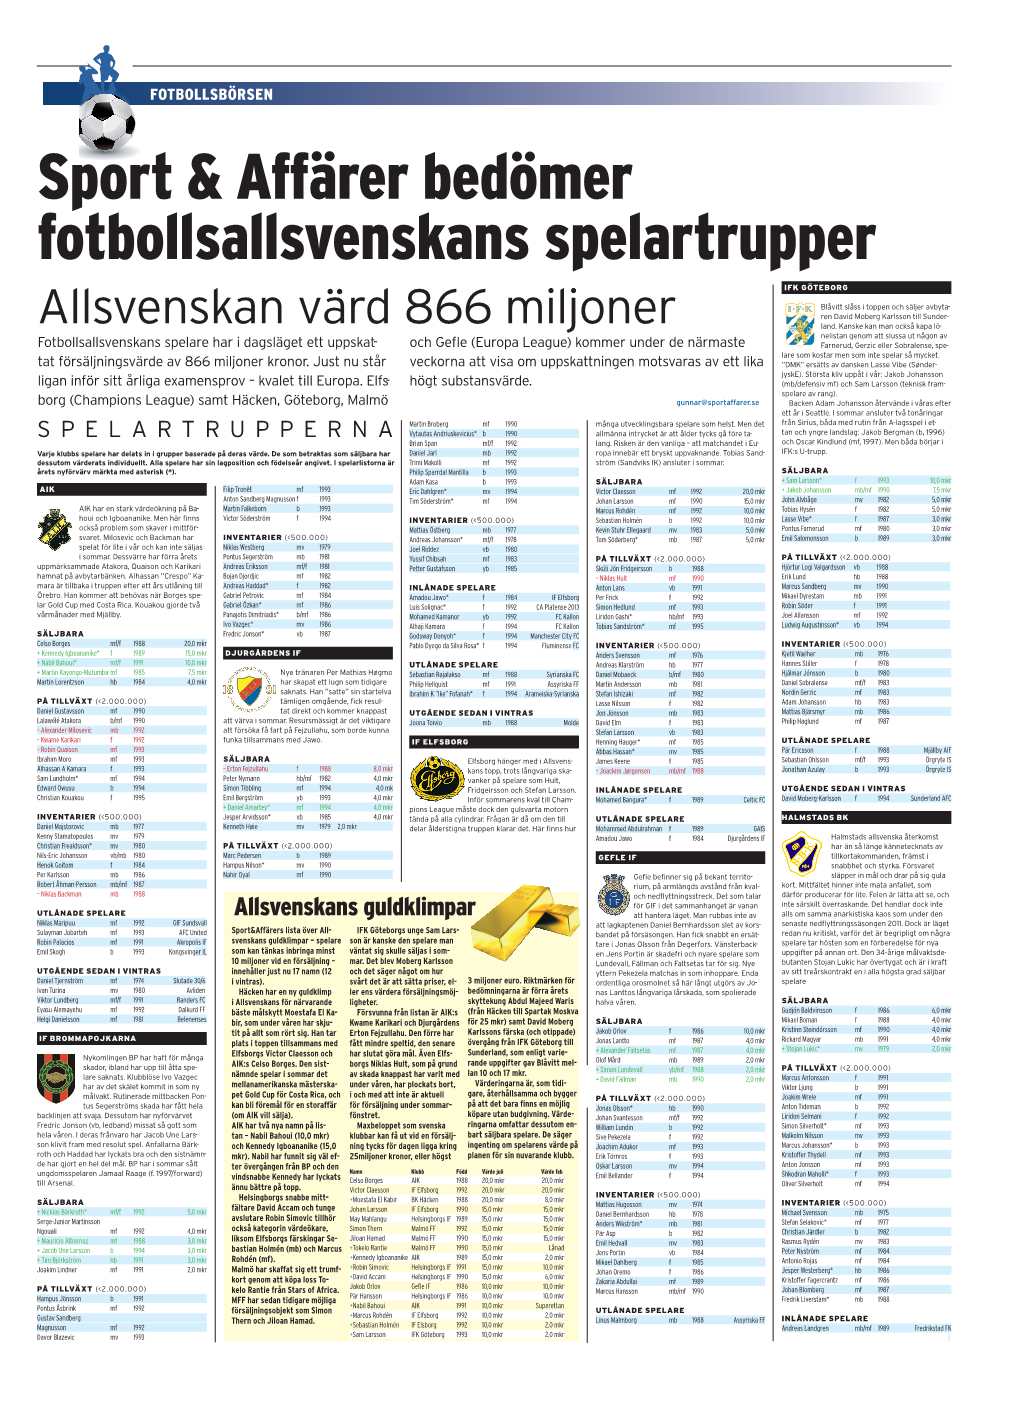 Sport & Affärer Bedömer Fotbollsallsvenskans